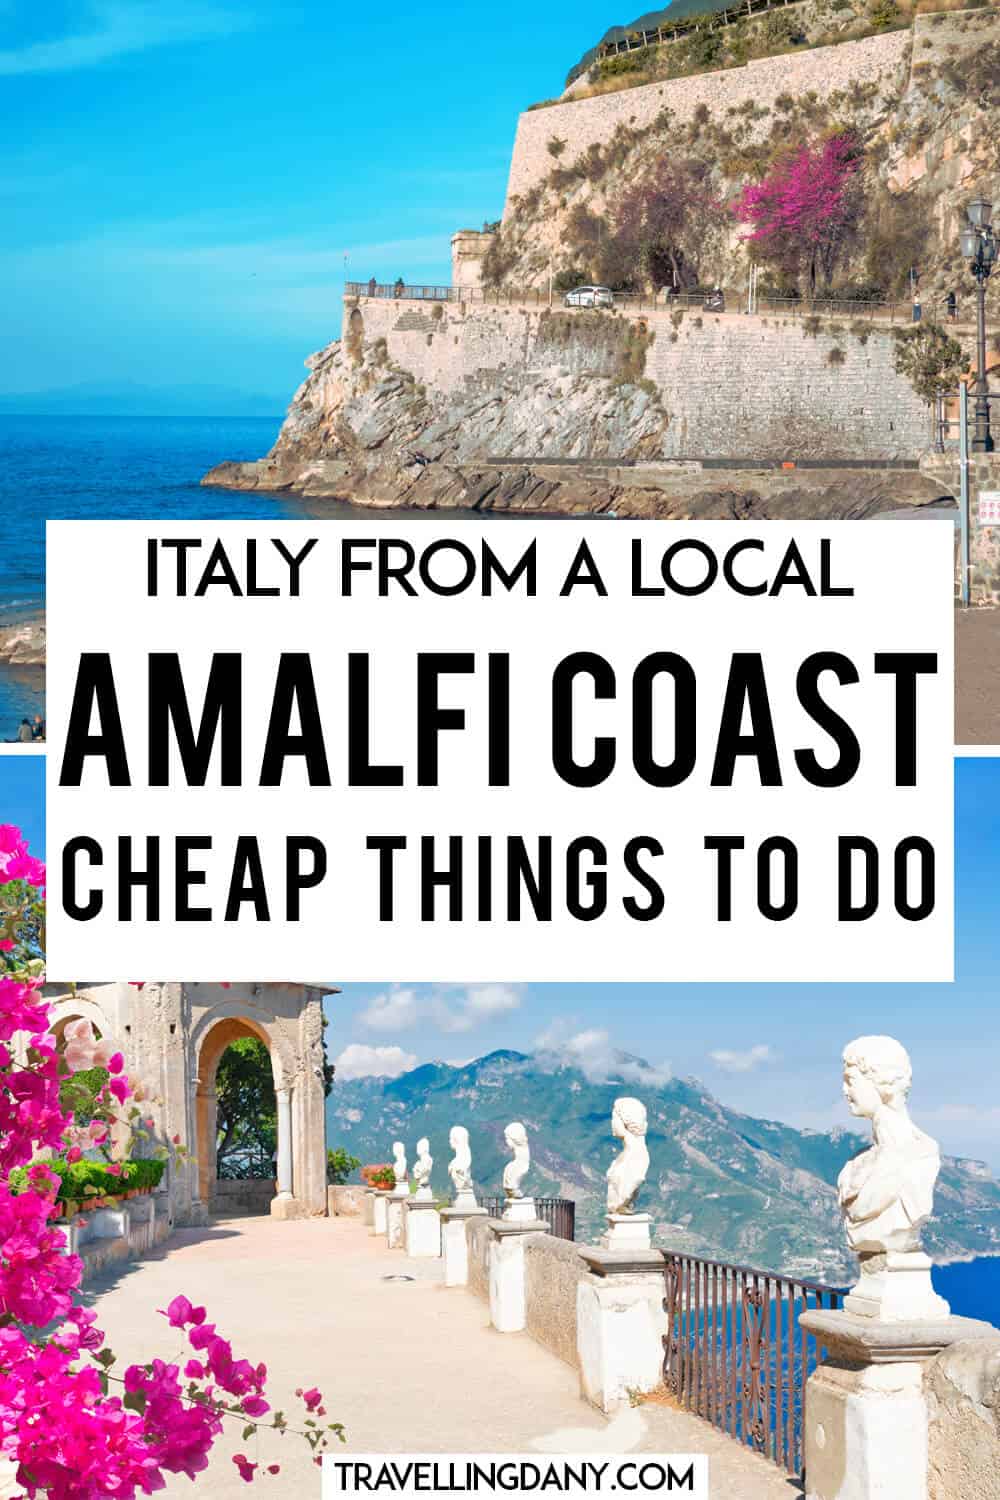 Stai organizzando le vacanze e non sai ancora cosa fare in Costiera Amalfitana? Ecco tante idee interessanti!